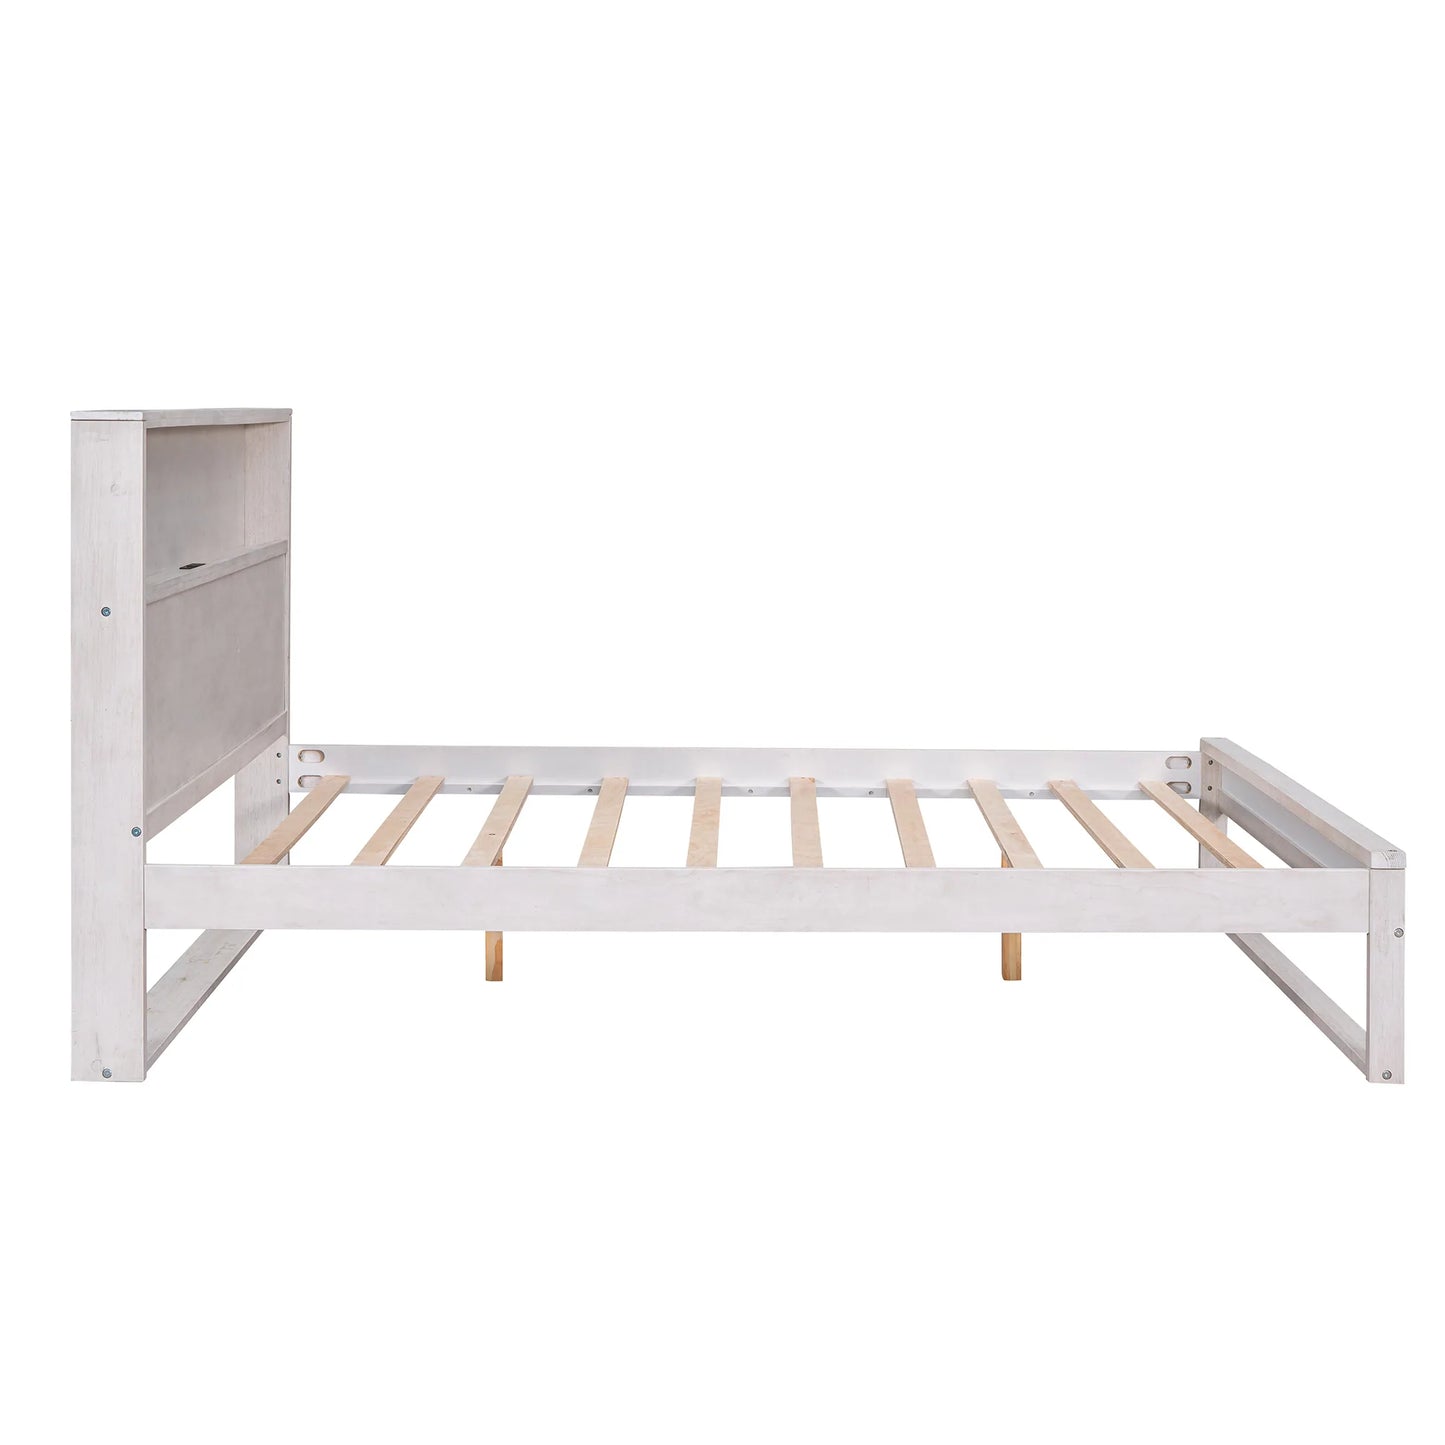 Bed Platform with Storage in Queen Antique White